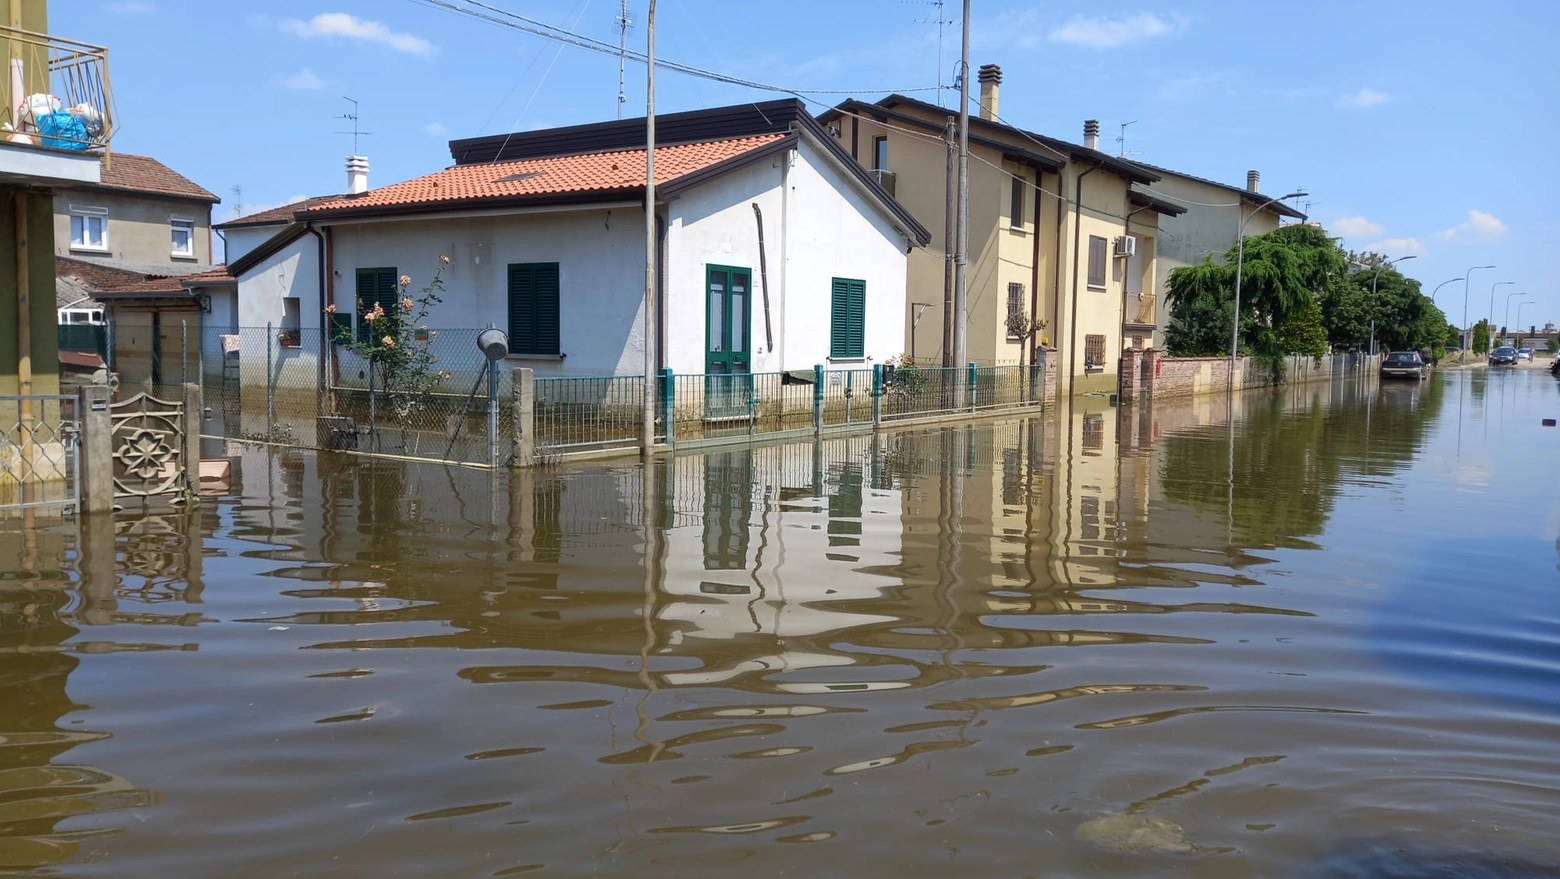 Una delle immagini di Conselice (Ravenna), tra le zone più colpite, nei giorni seguenti all'alluvione